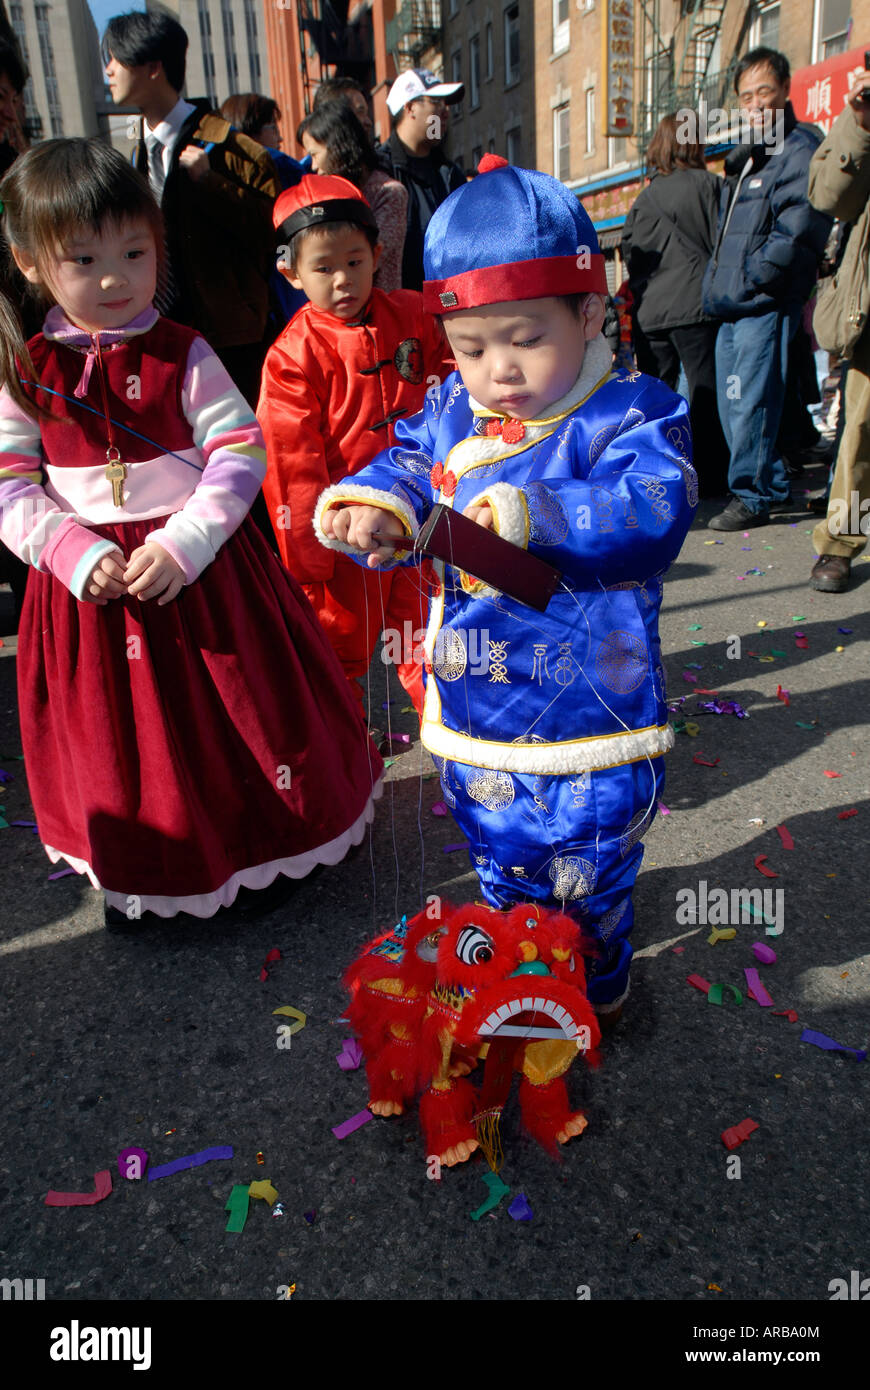 Chinese New Year in New York City Chinatown Stock Photo Alamy